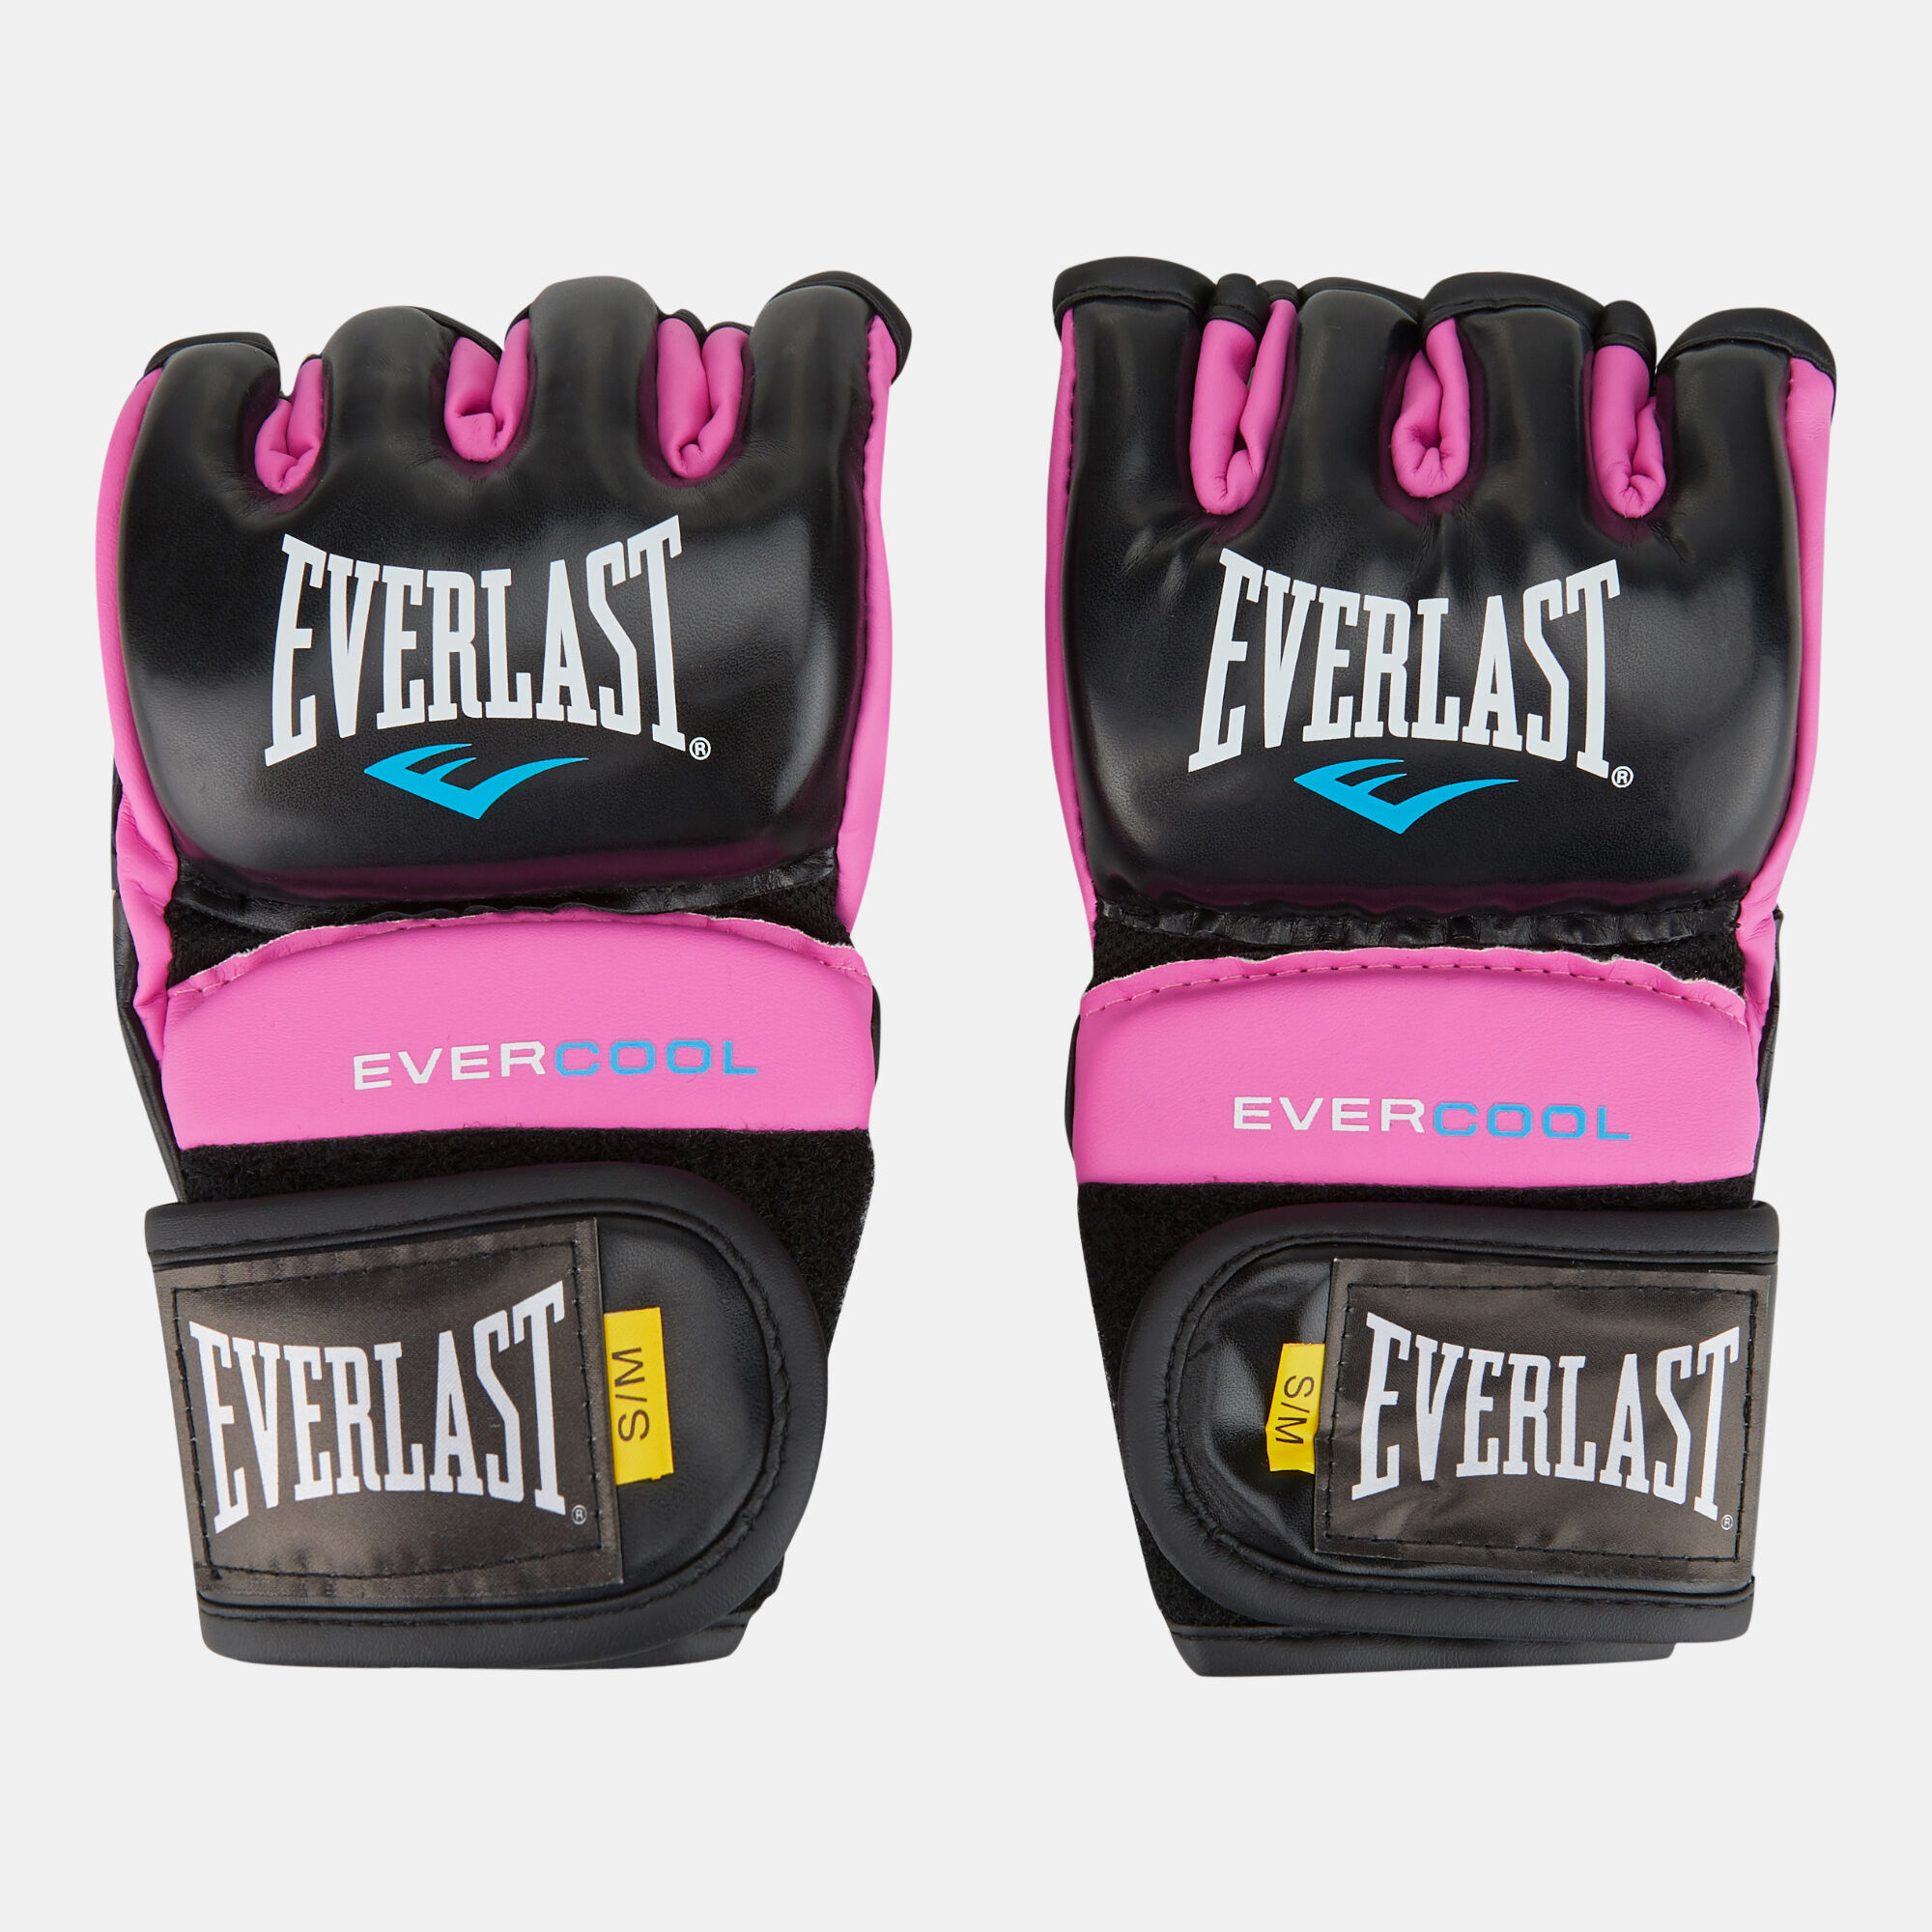 Everlast Women's Everstrike Training Gloves 